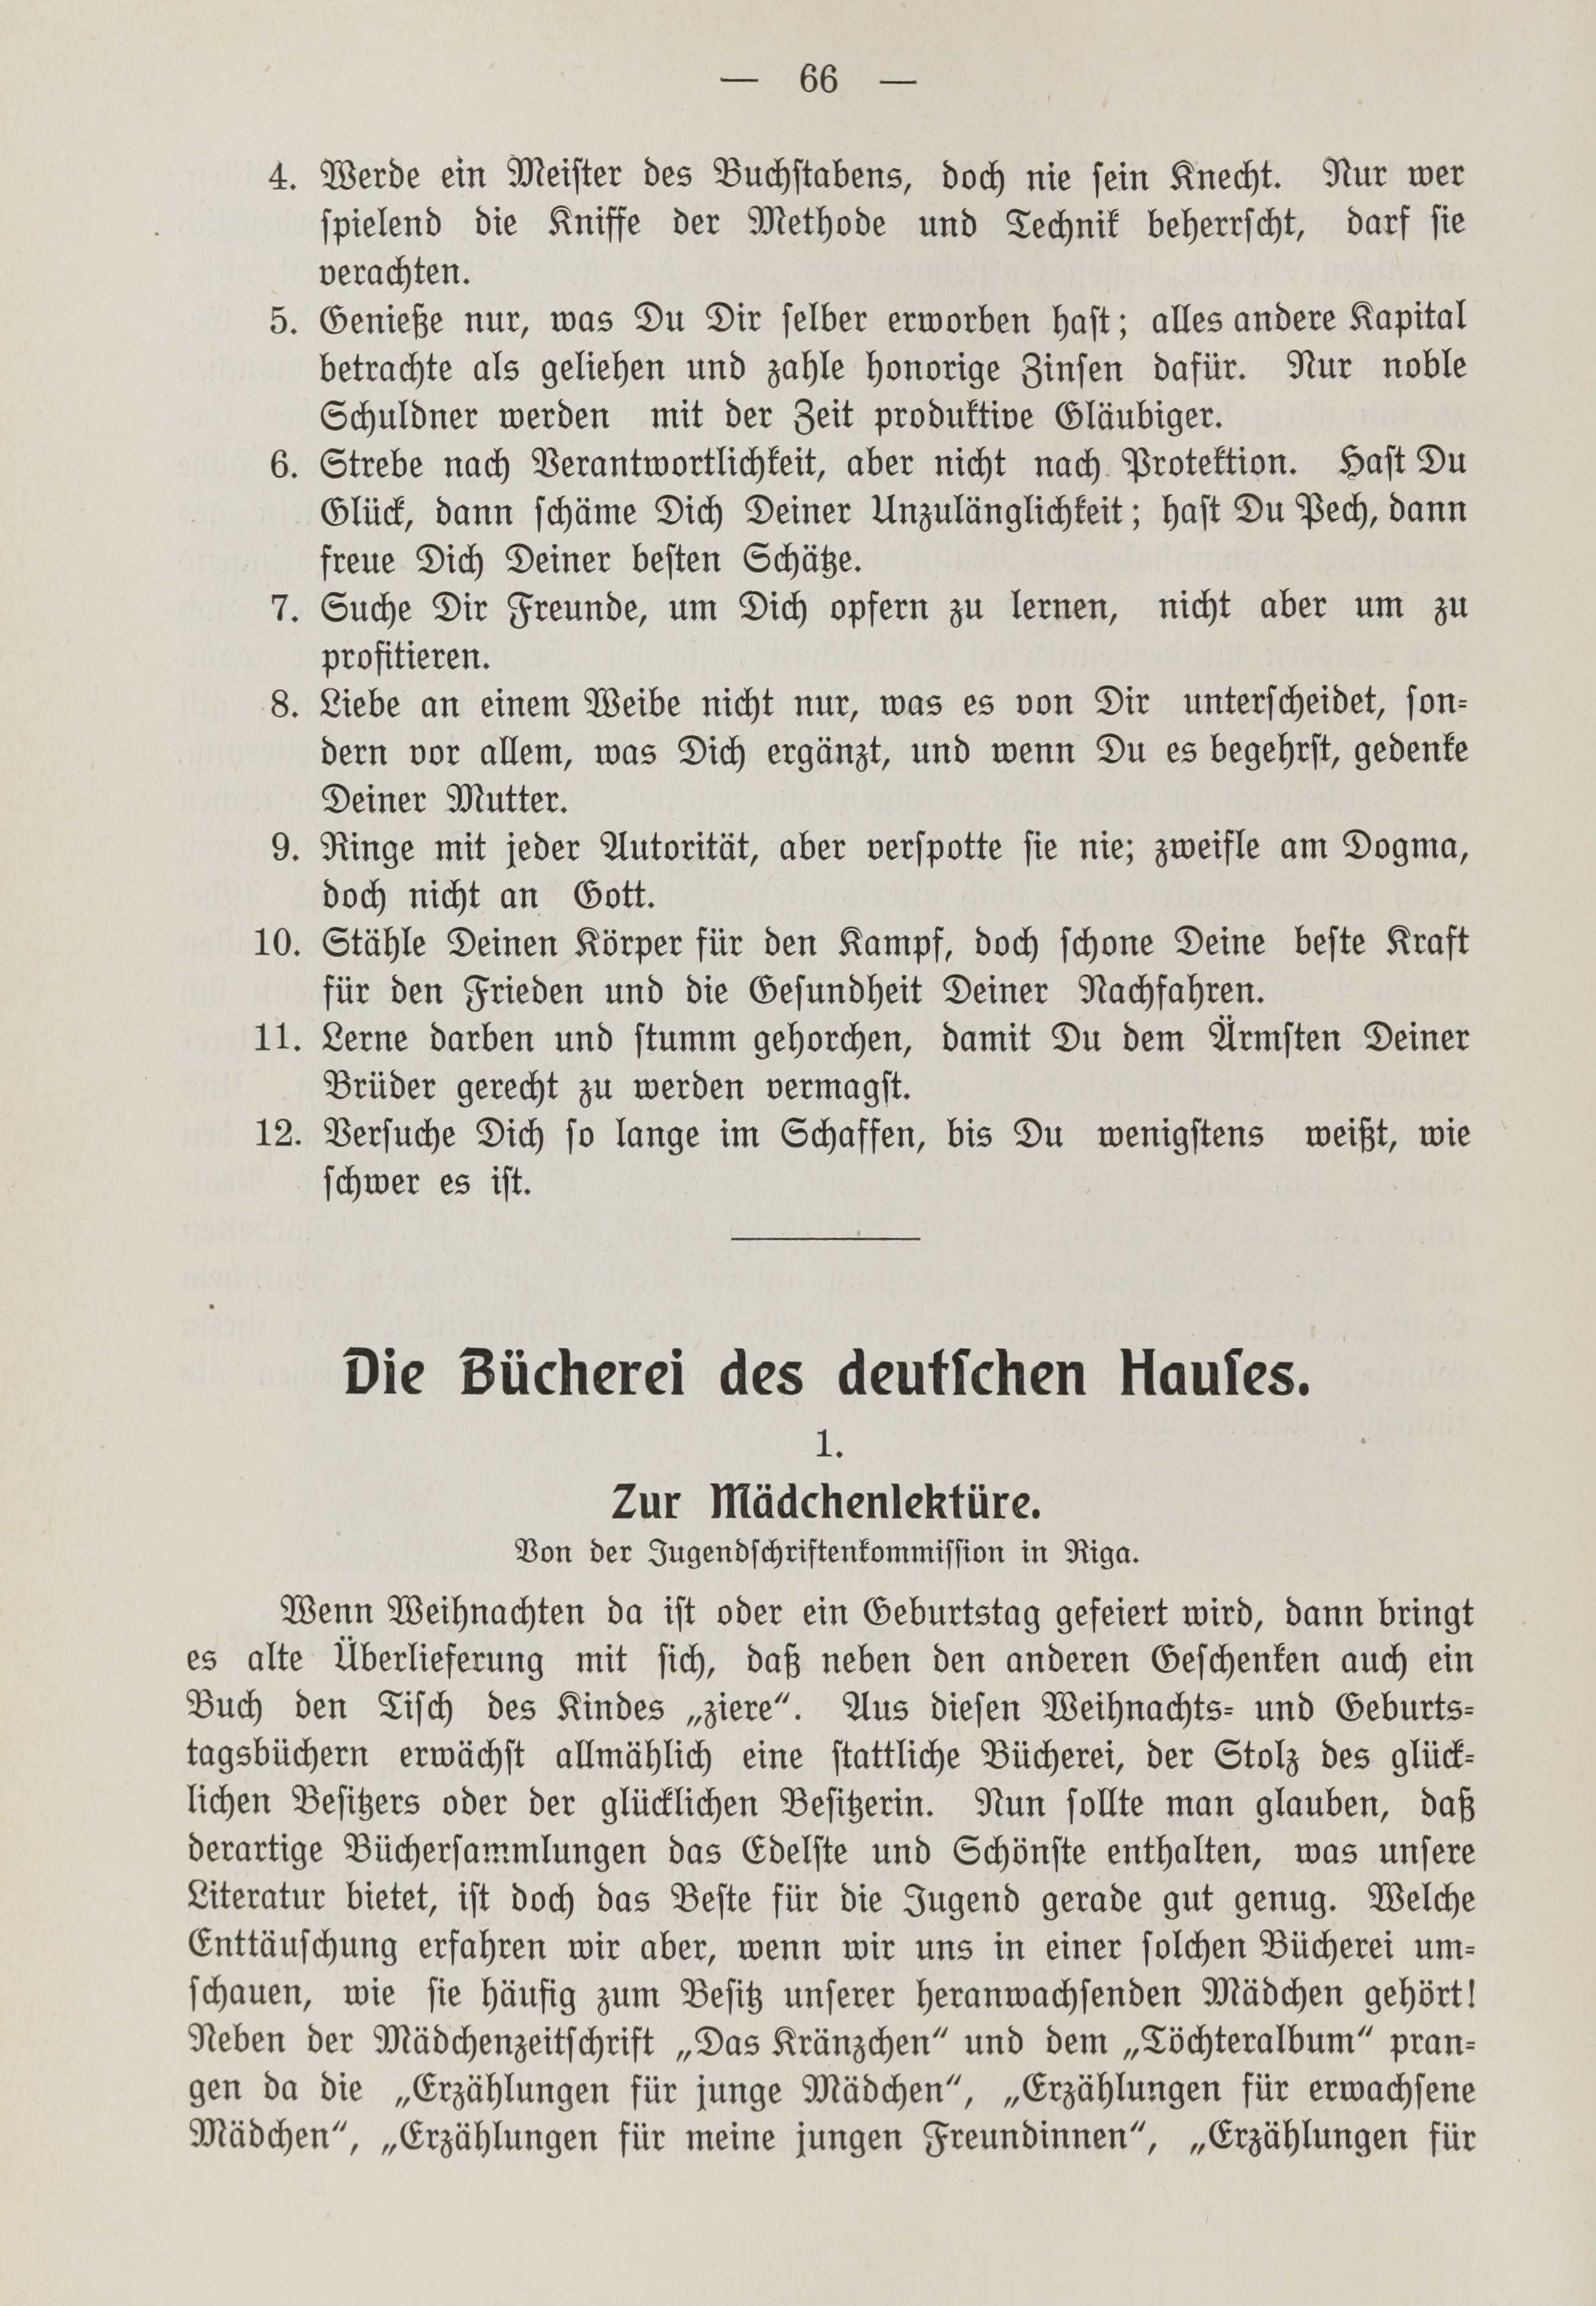 Deutsche Monatsschrift für Russland [1] (1912) | 73. (66) Основной текст